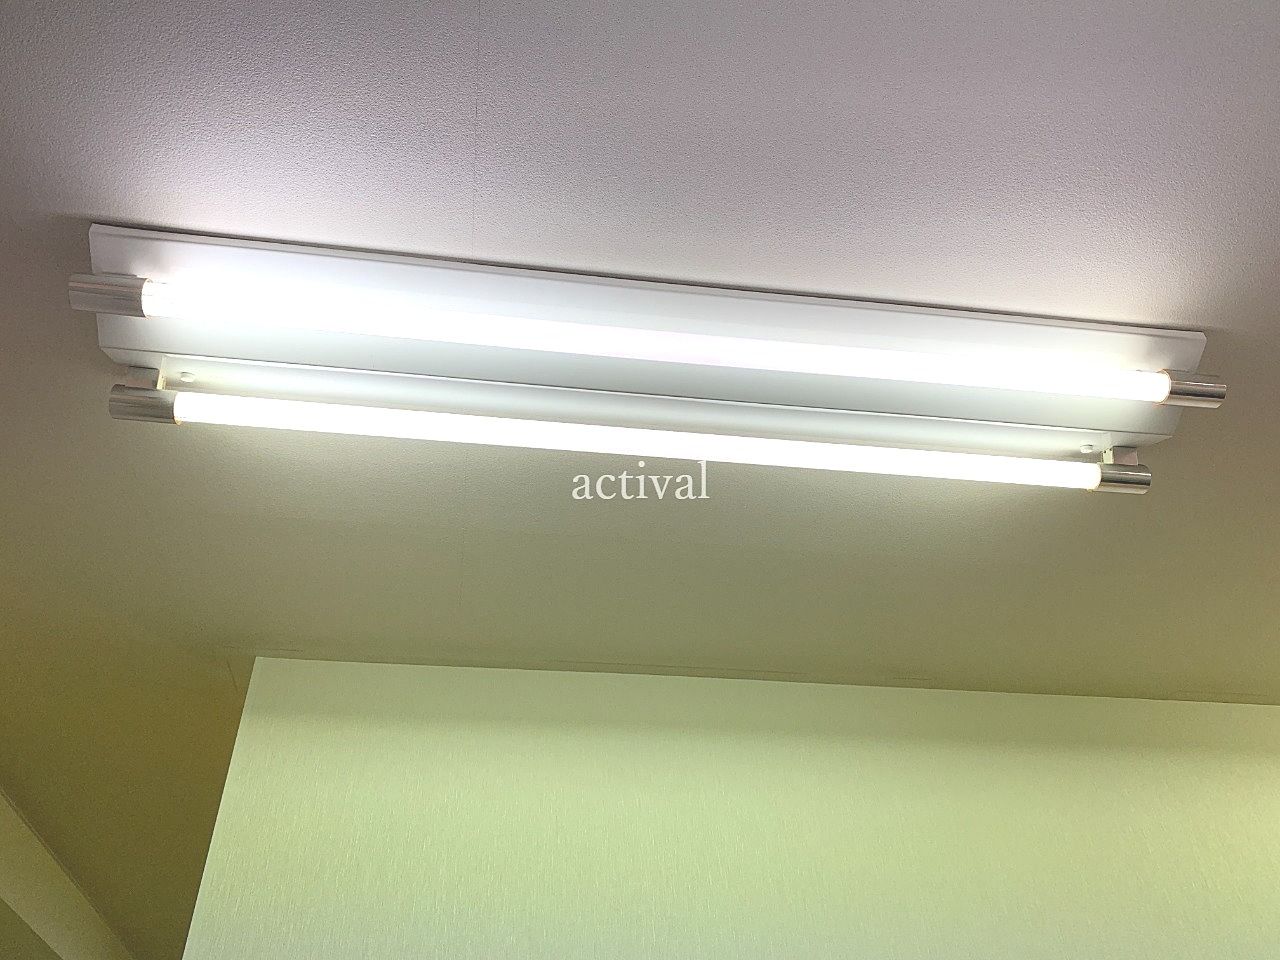 ア・ス・ヴェルデ週貸店舗の蛍光灯を交換しました。